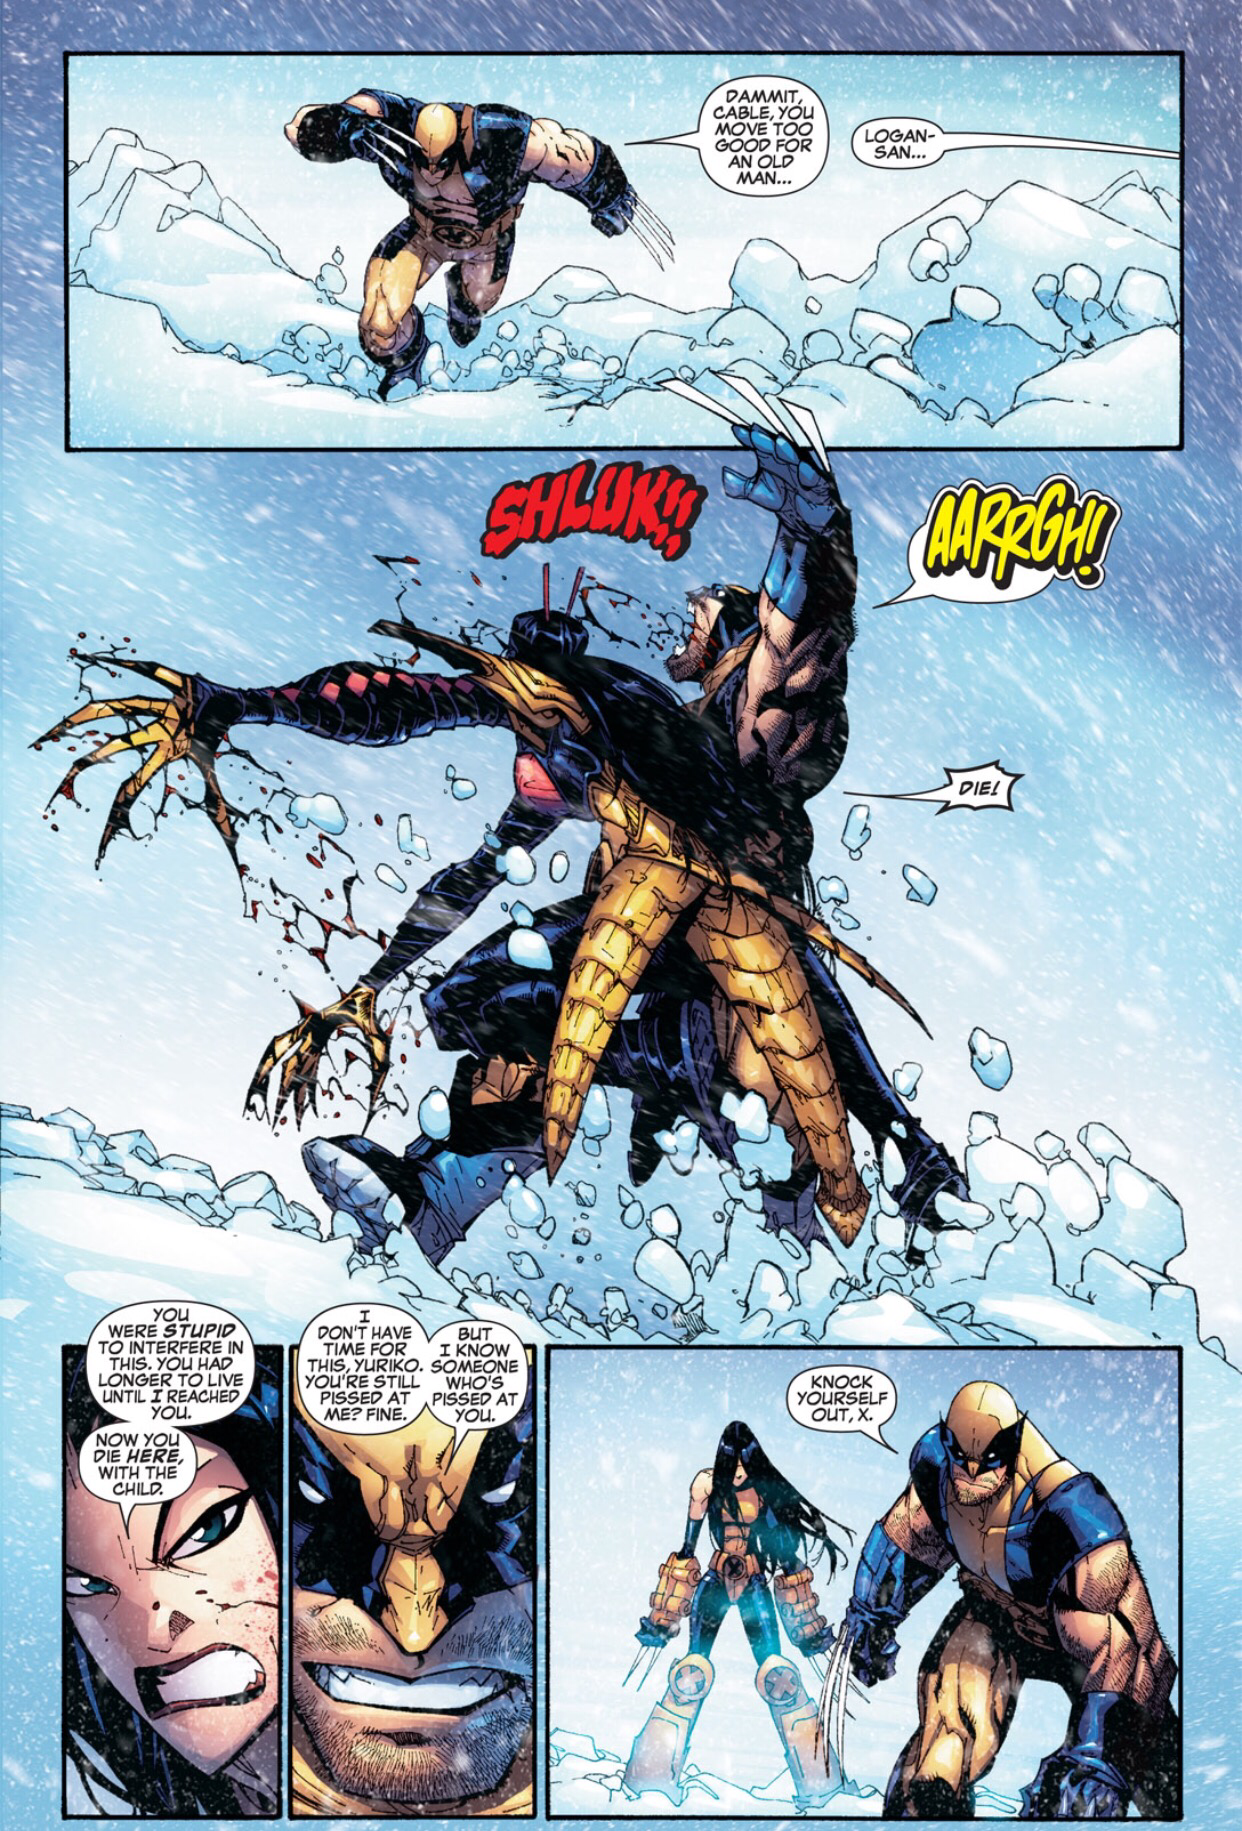 X-23 vs. Lady Deathstrike